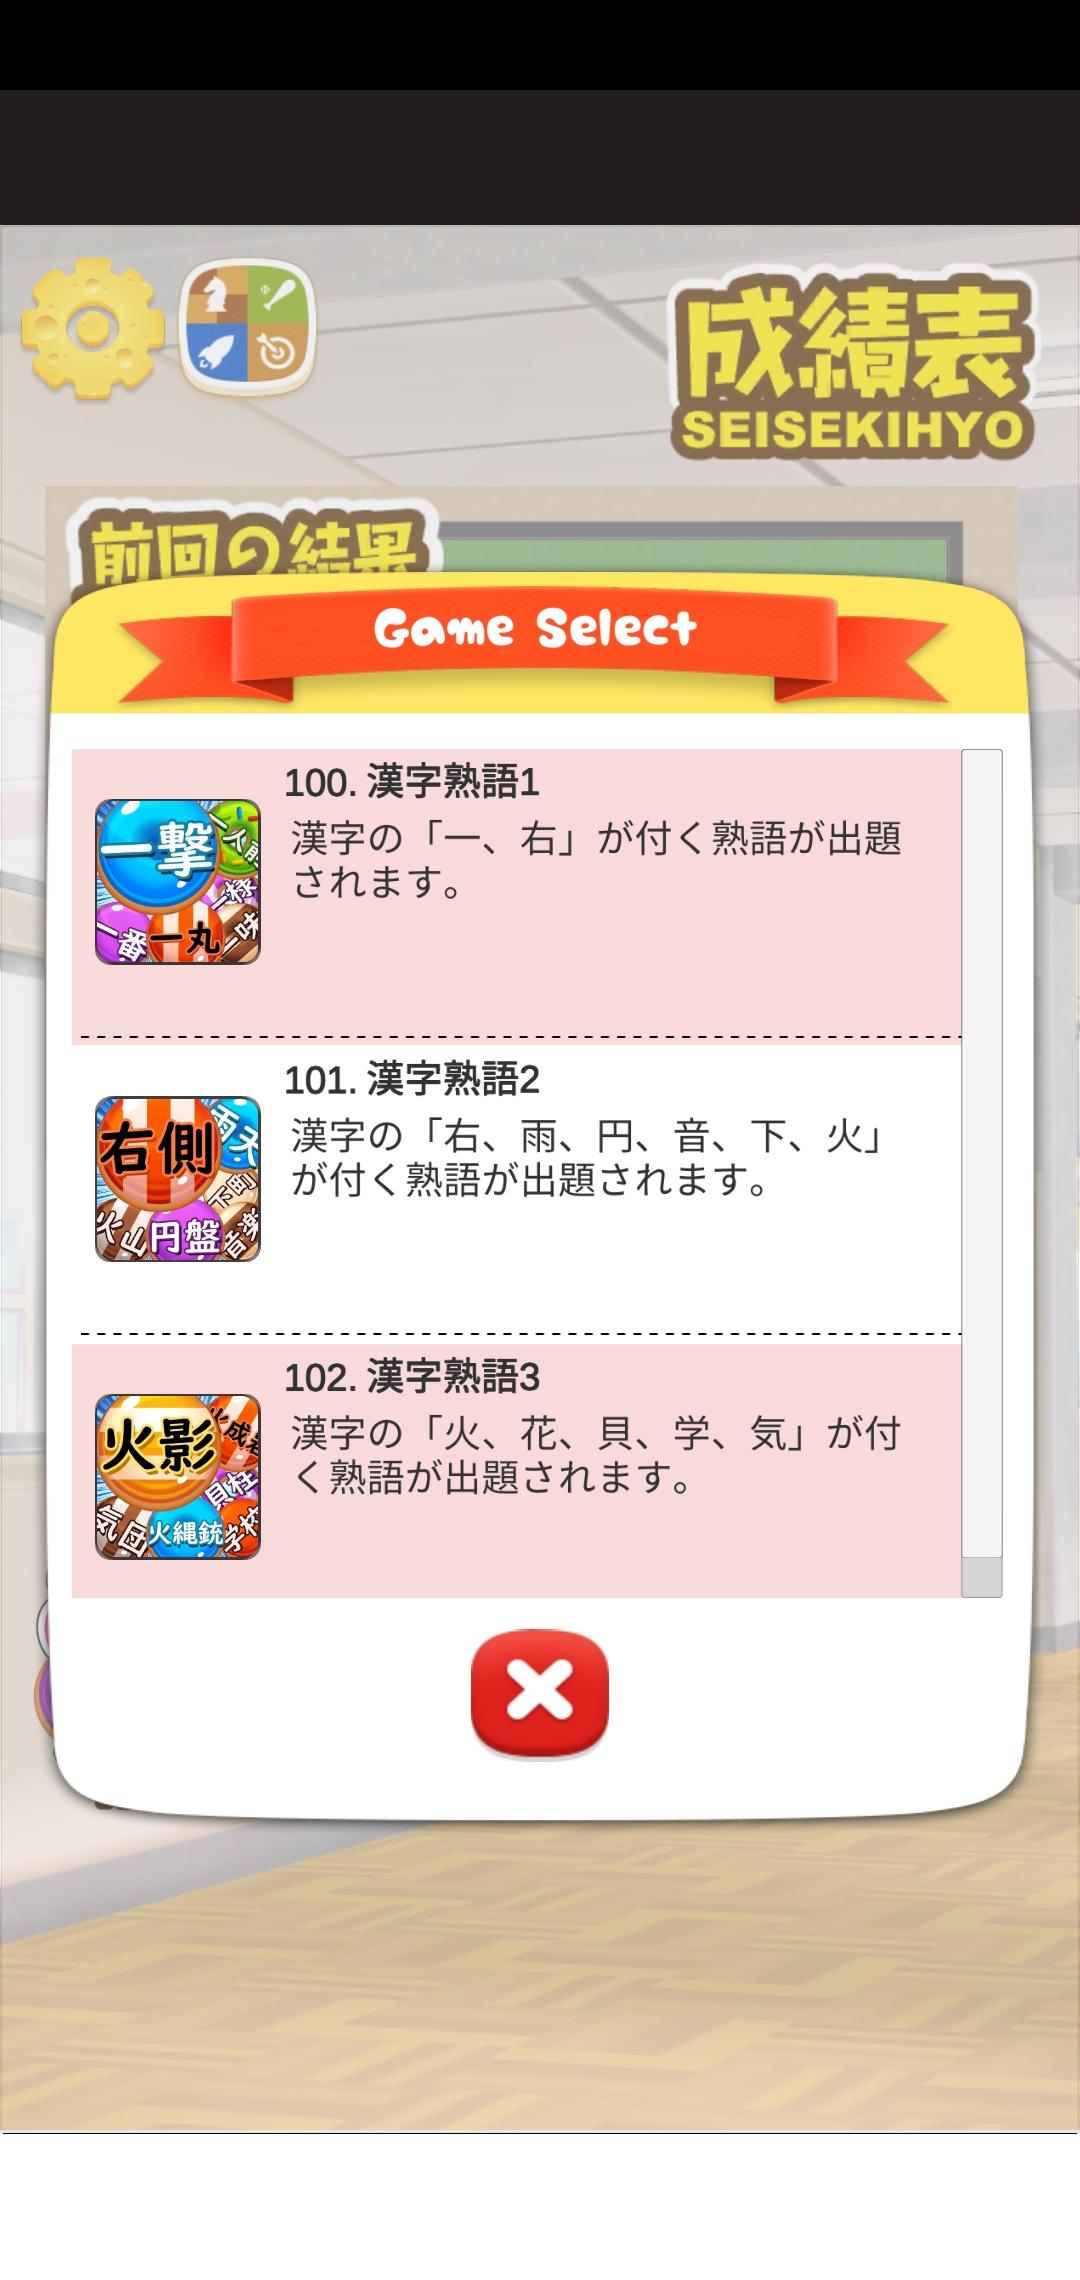 日本汉字拼图游戏等级1 Puzzben3安卓下载 安卓版apk 免费下载